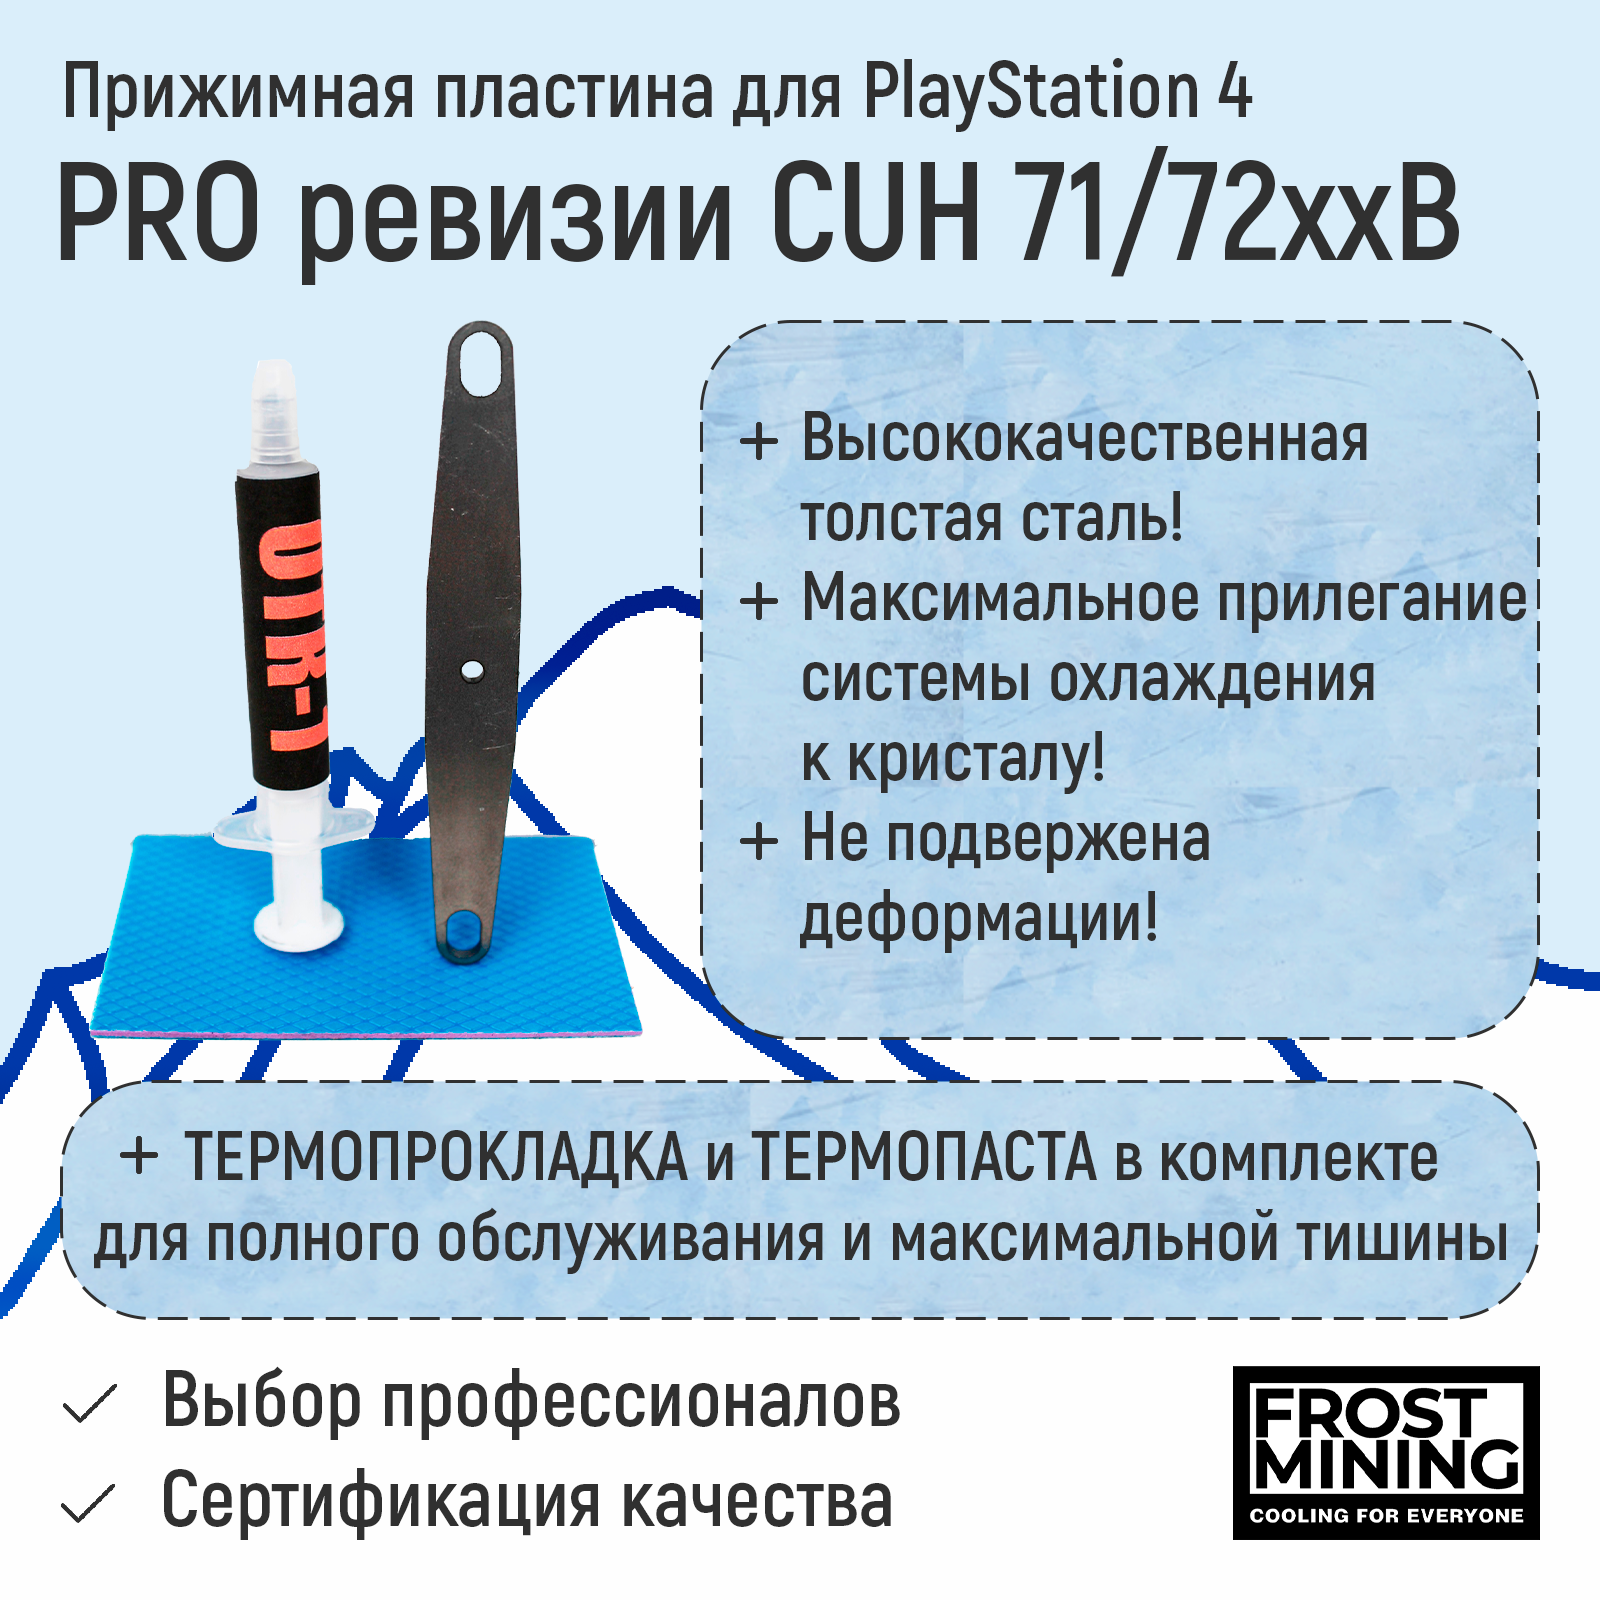 Прижимная пластина, Прижимная пластина для приставки FrostMining для Playstation 4 Pro